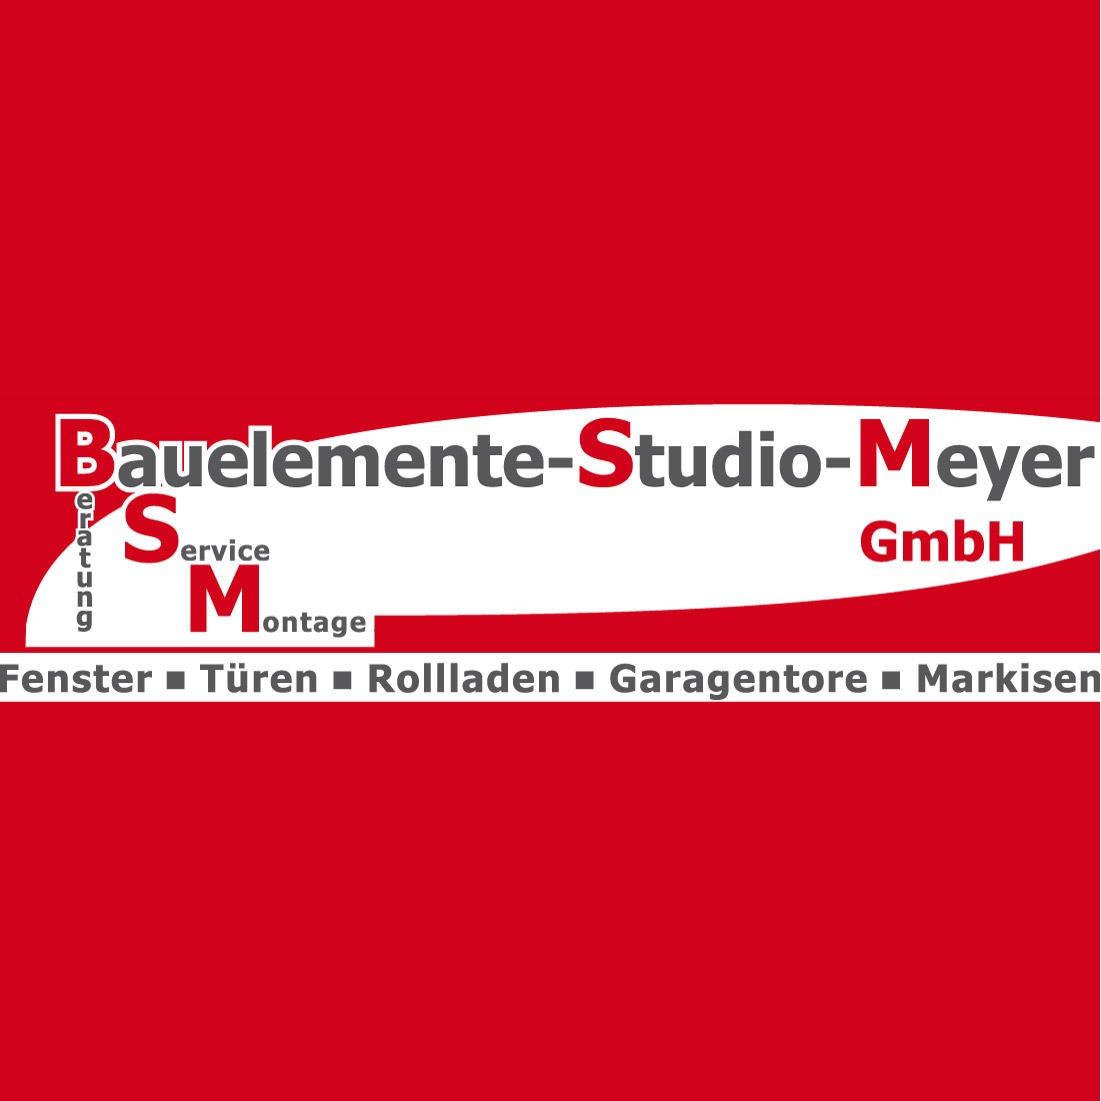 Bauelemente-Studio-Meyer GmbH in Wolfhagen - Logo